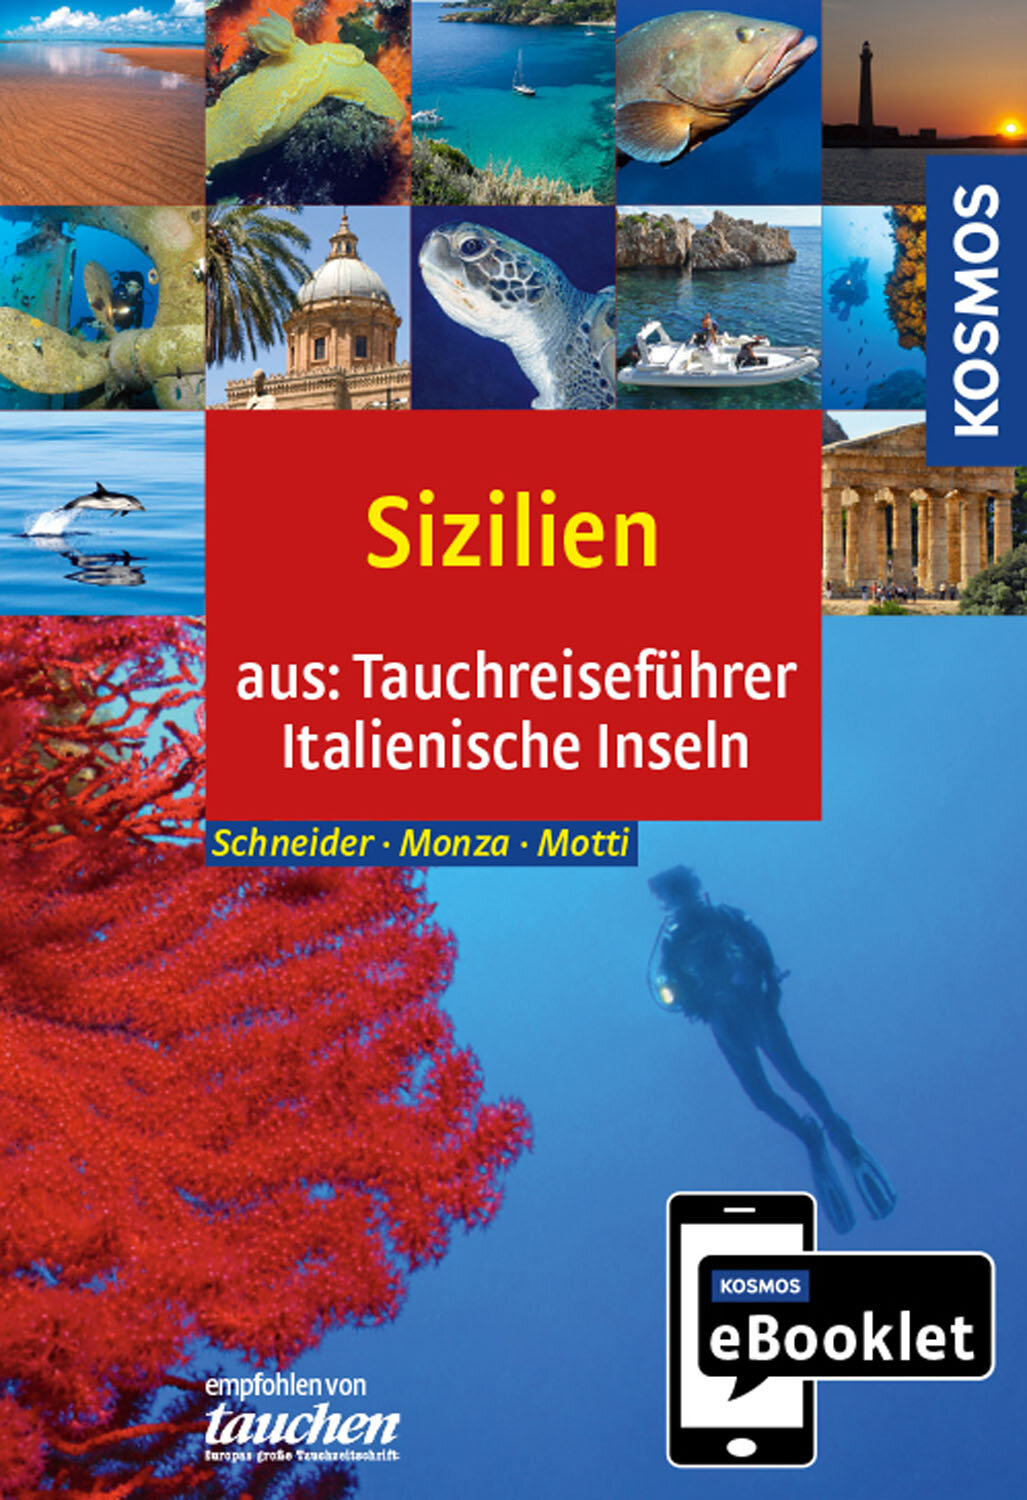 KOSMOS eBooklet: Tauchreiseführer Sizilien